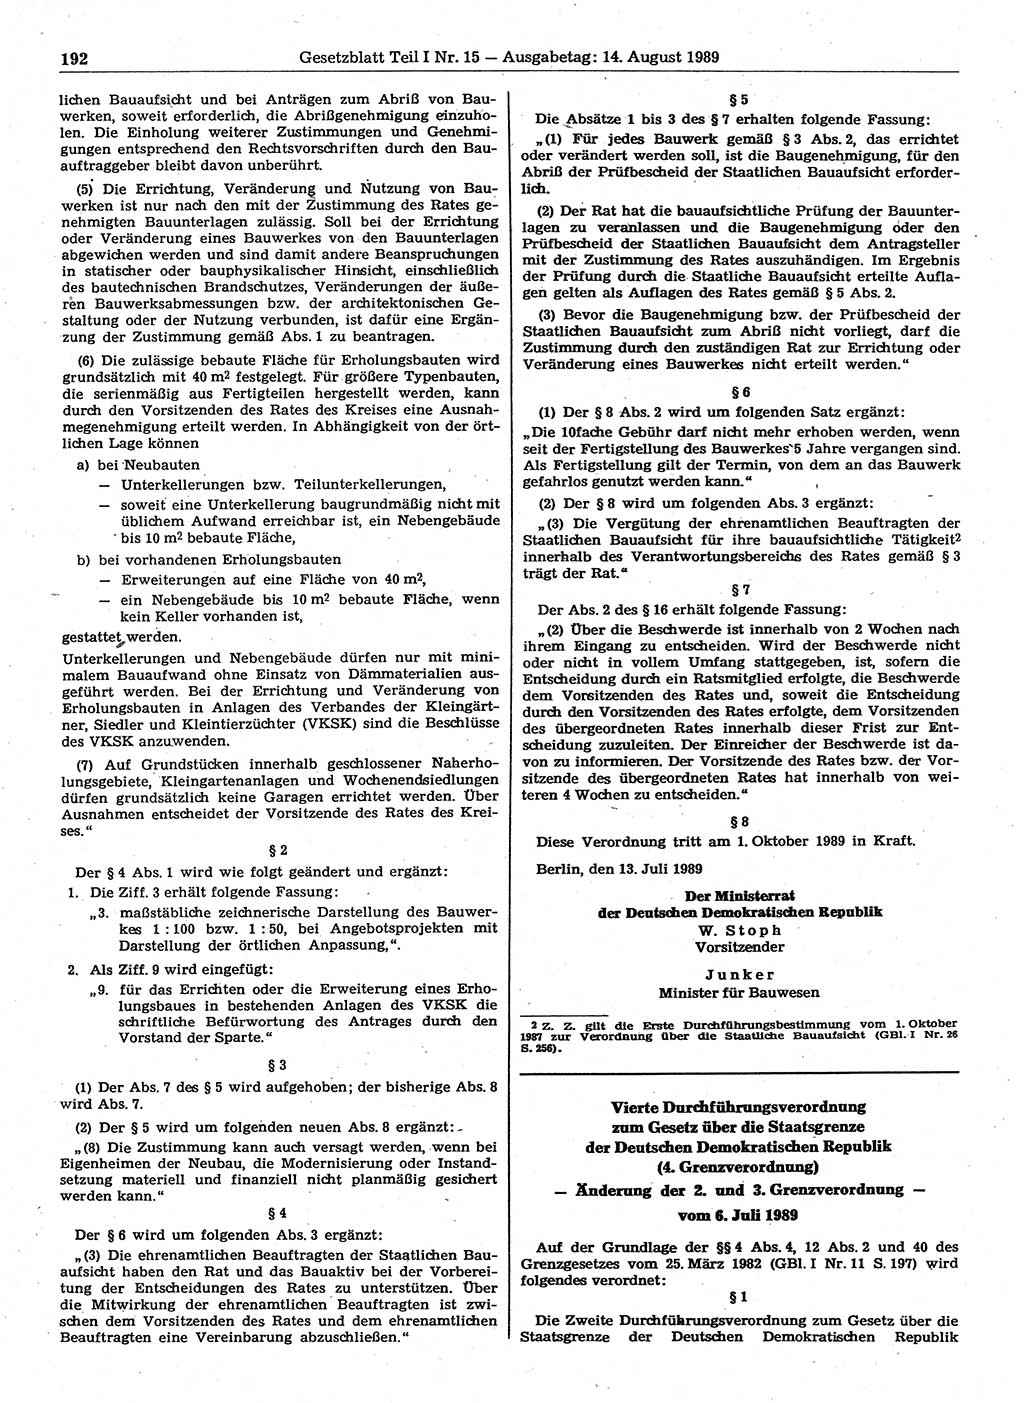 Gesetzblatt (GBl.) der Deutschen Demokratischen Republik (DDR) Teil Ⅰ 1989, Seite 192 (GBl. DDR Ⅰ 1989, S. 192)